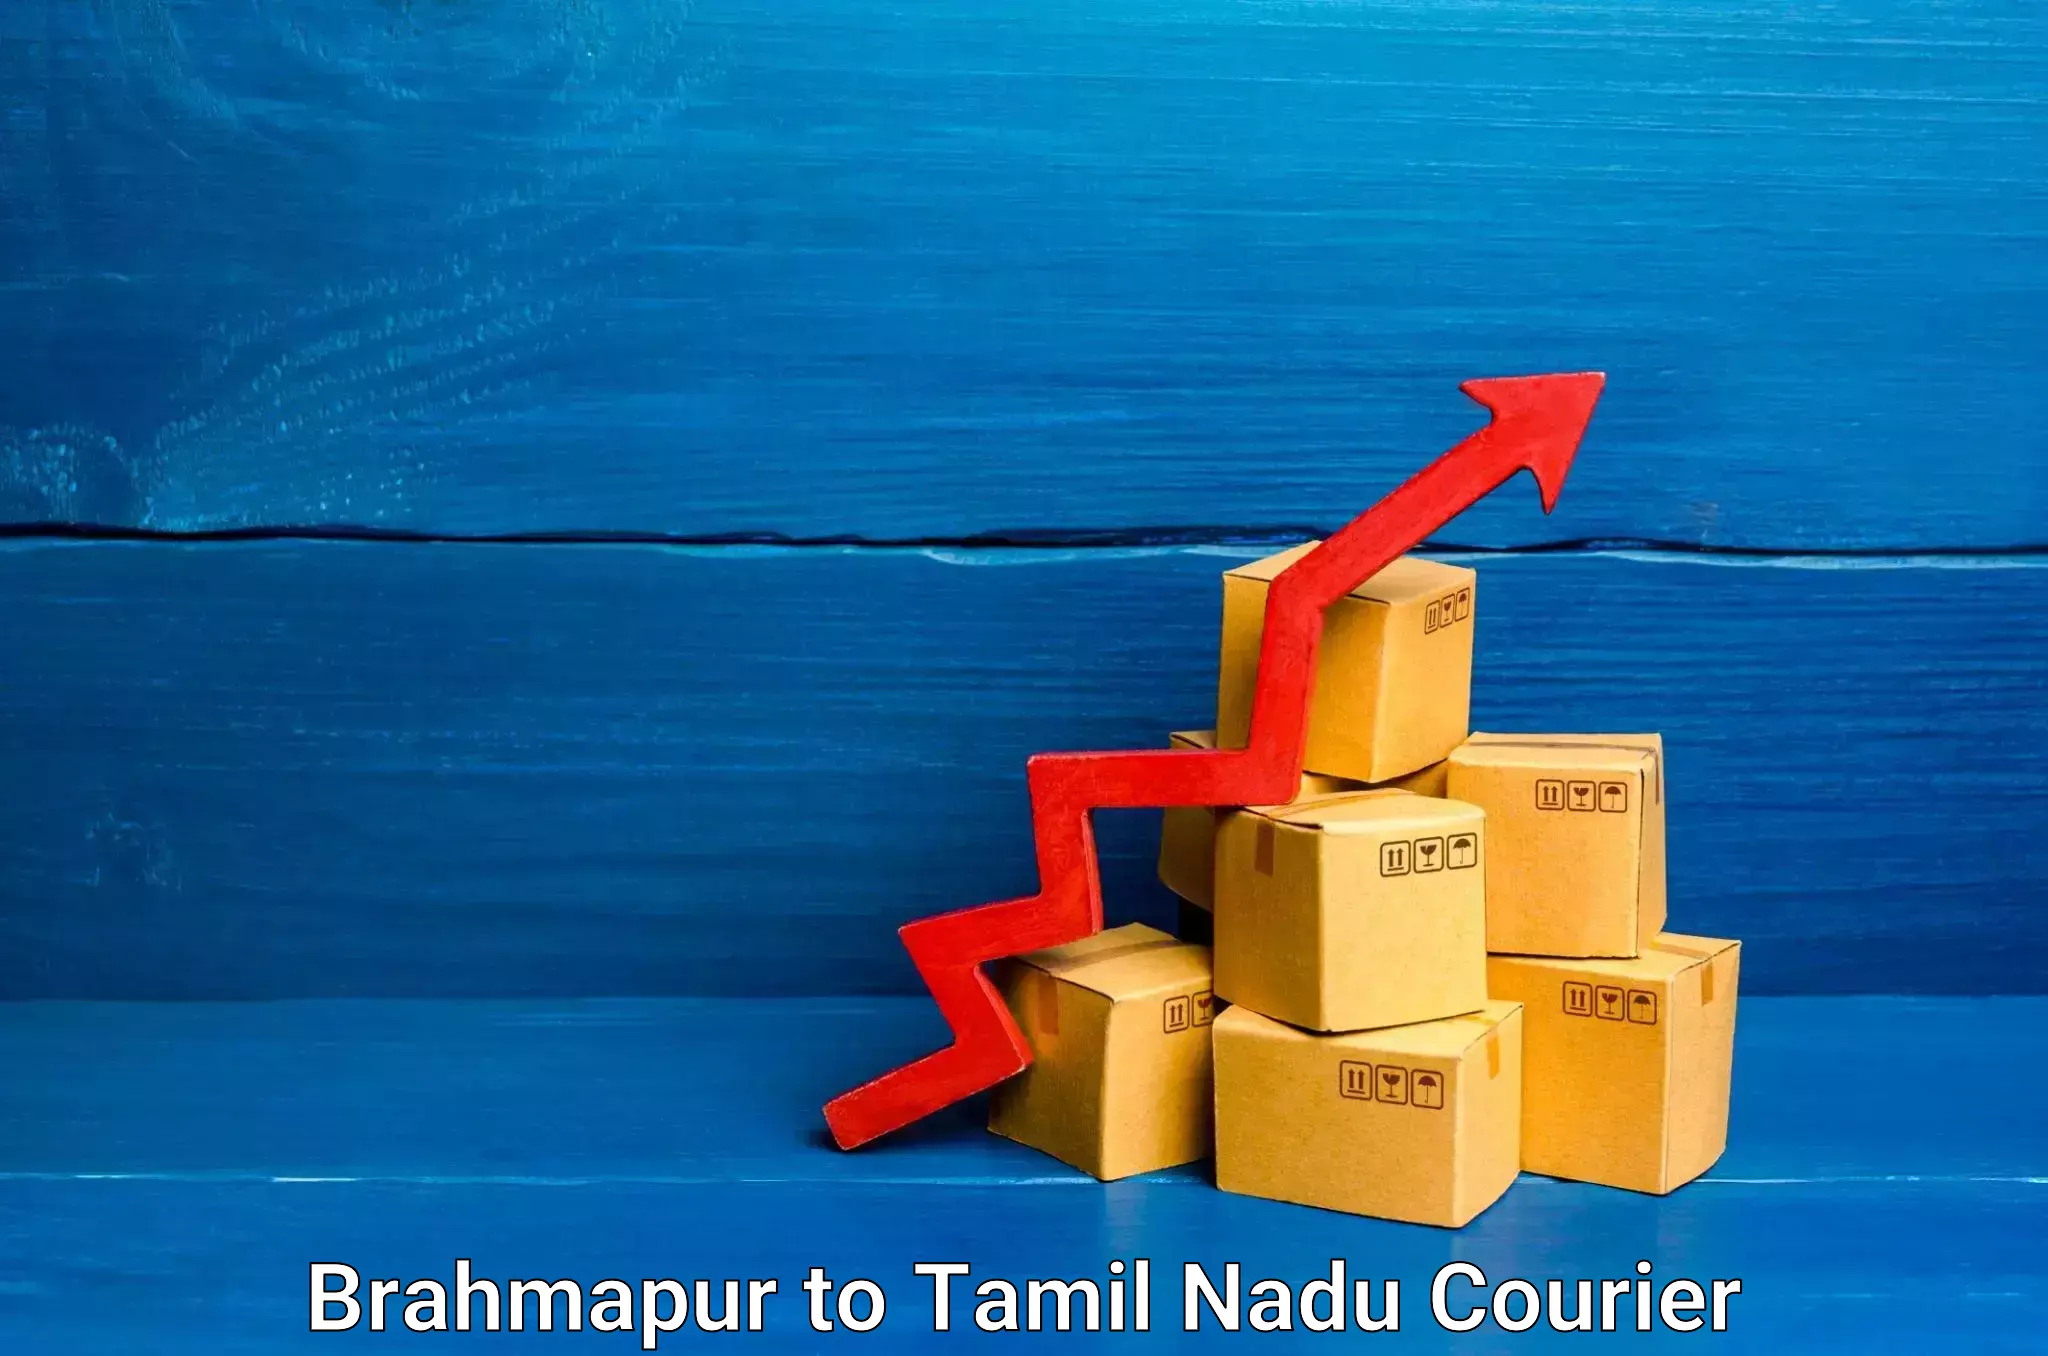 Furniture transport professionals Brahmapur to Tamil Nadu